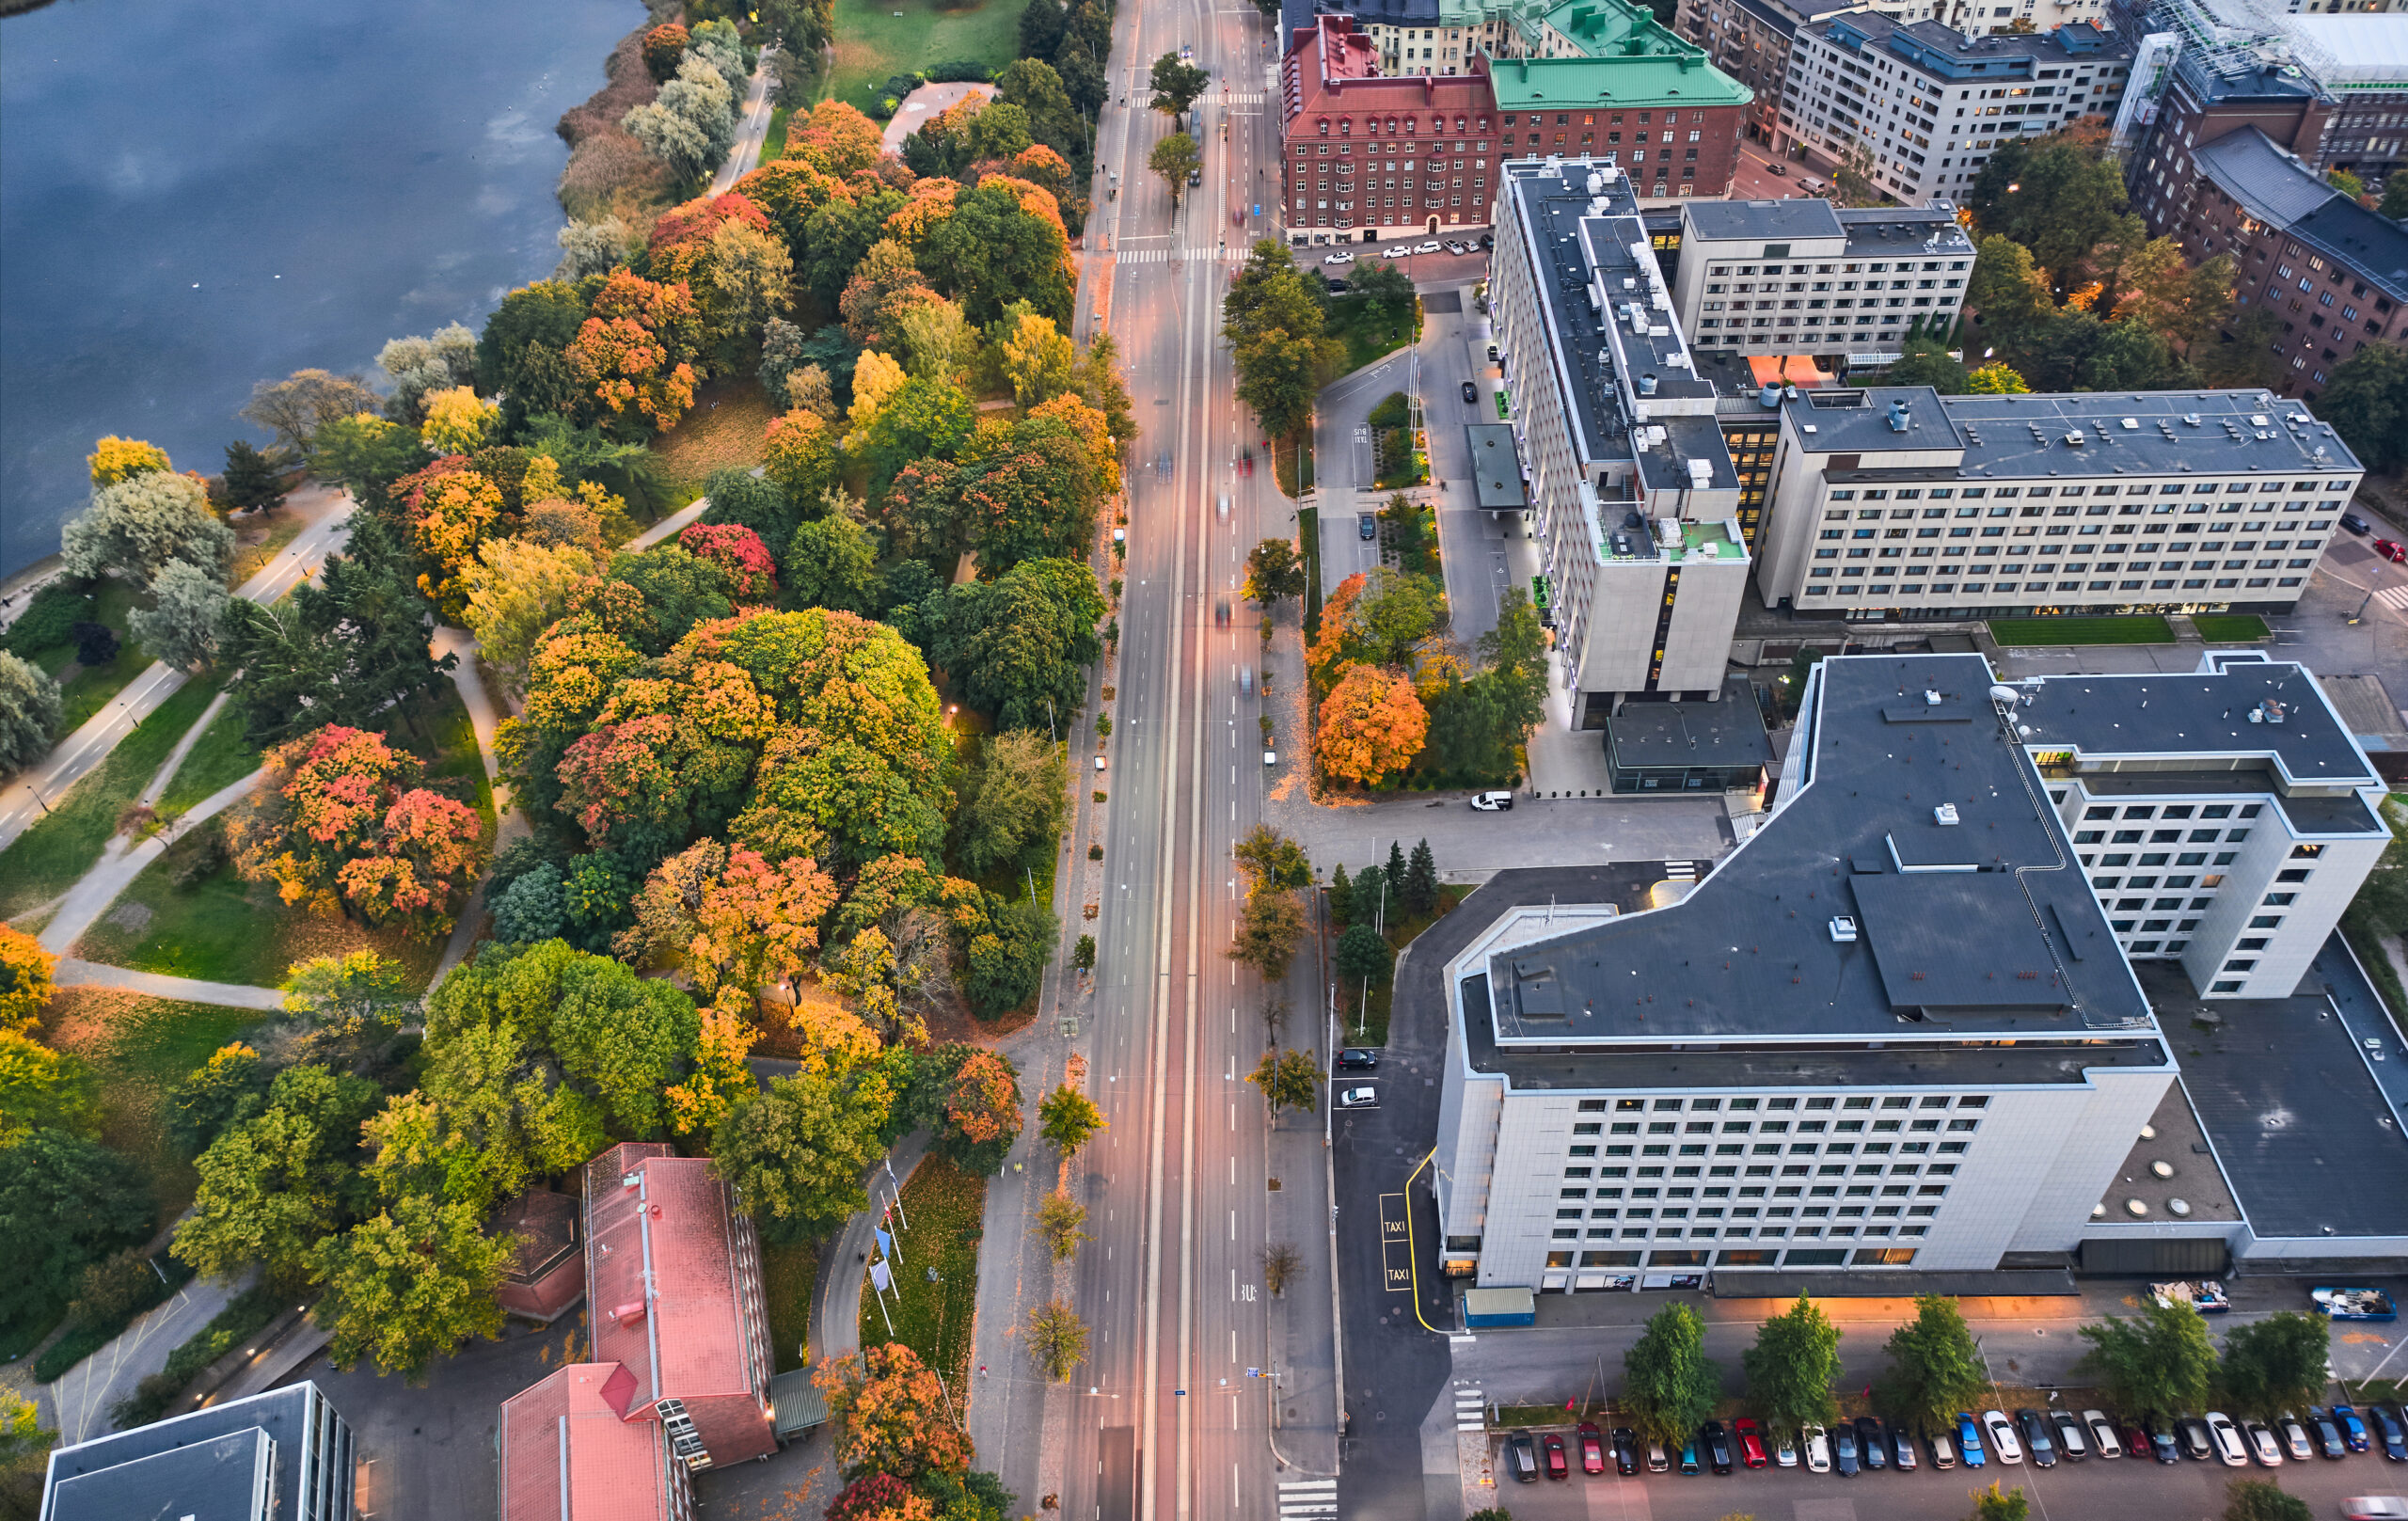 Ilmakuva Helsingin Mannerheimintielle, jossa on paljon keltaisia puita.